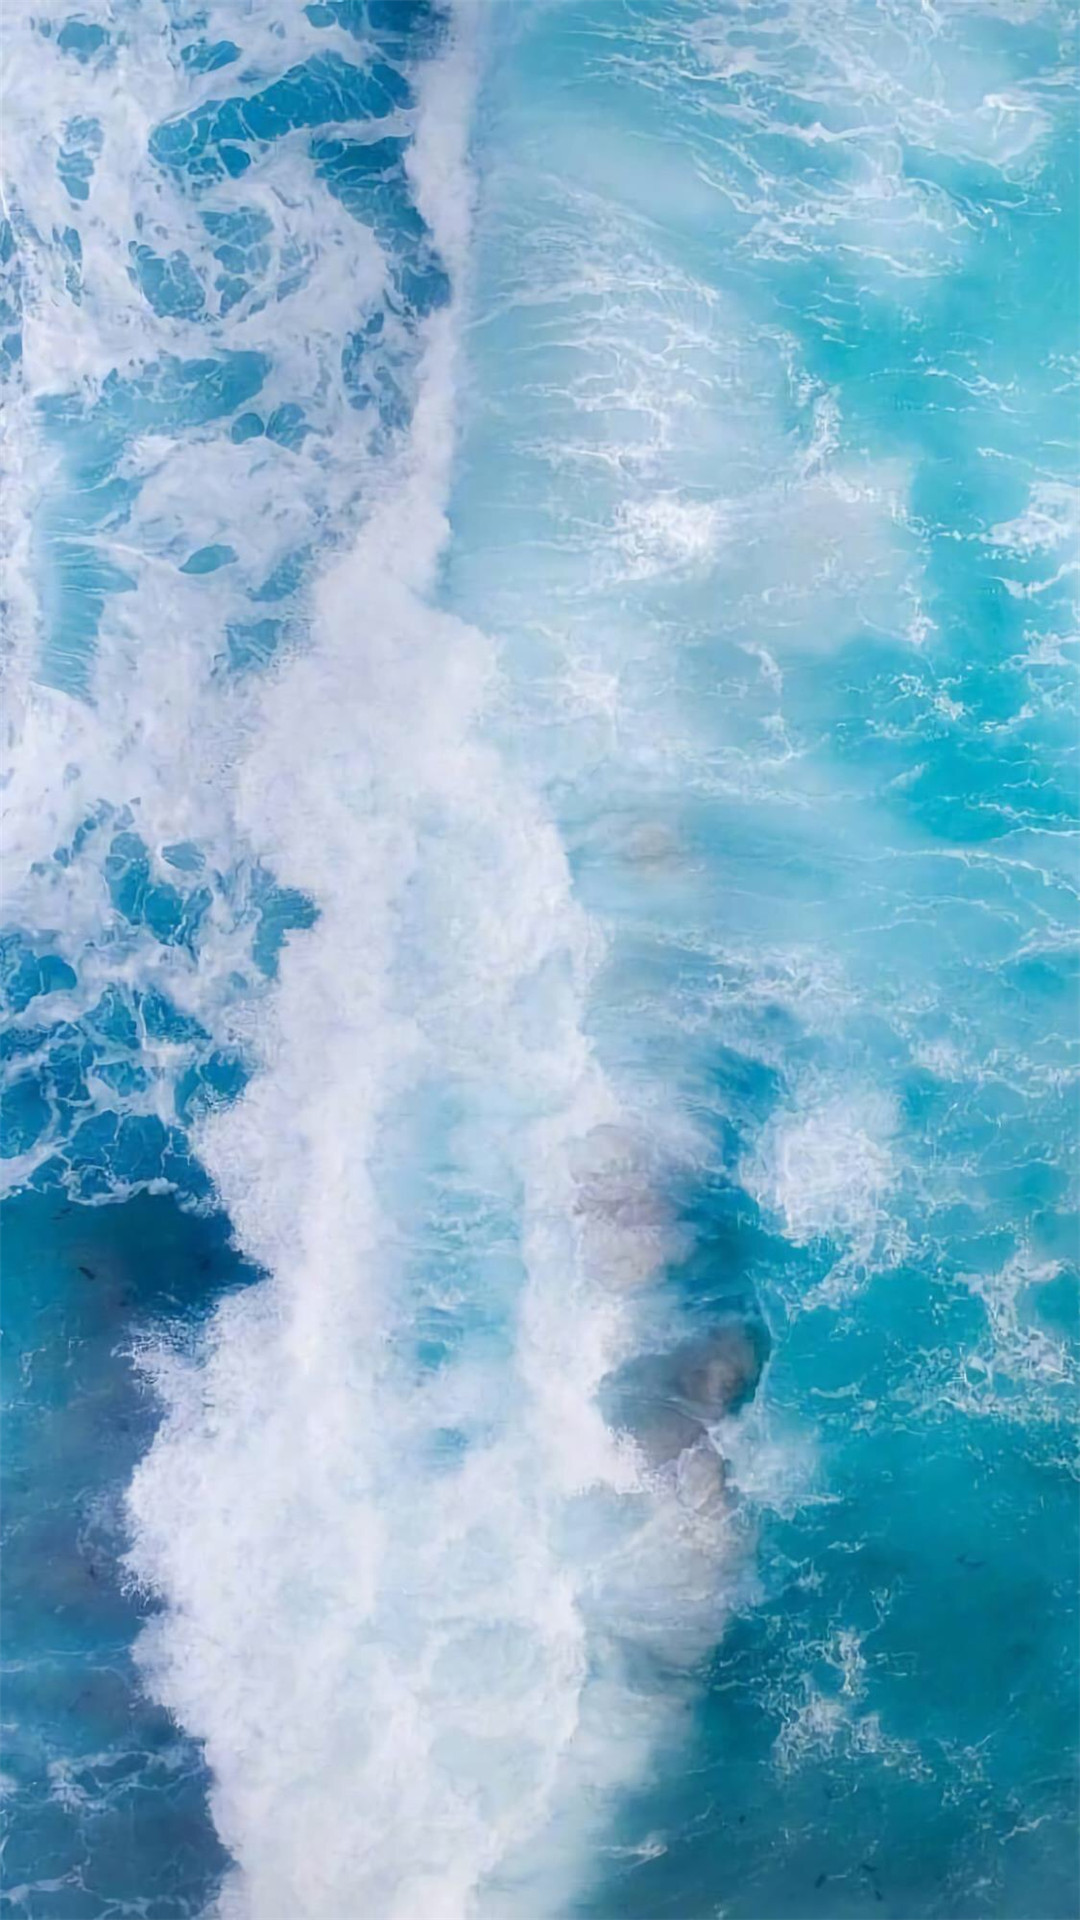 apk小游戏蓝色系海洋风景唯美高清手机壁纸安卓手机壁纸高清截图4